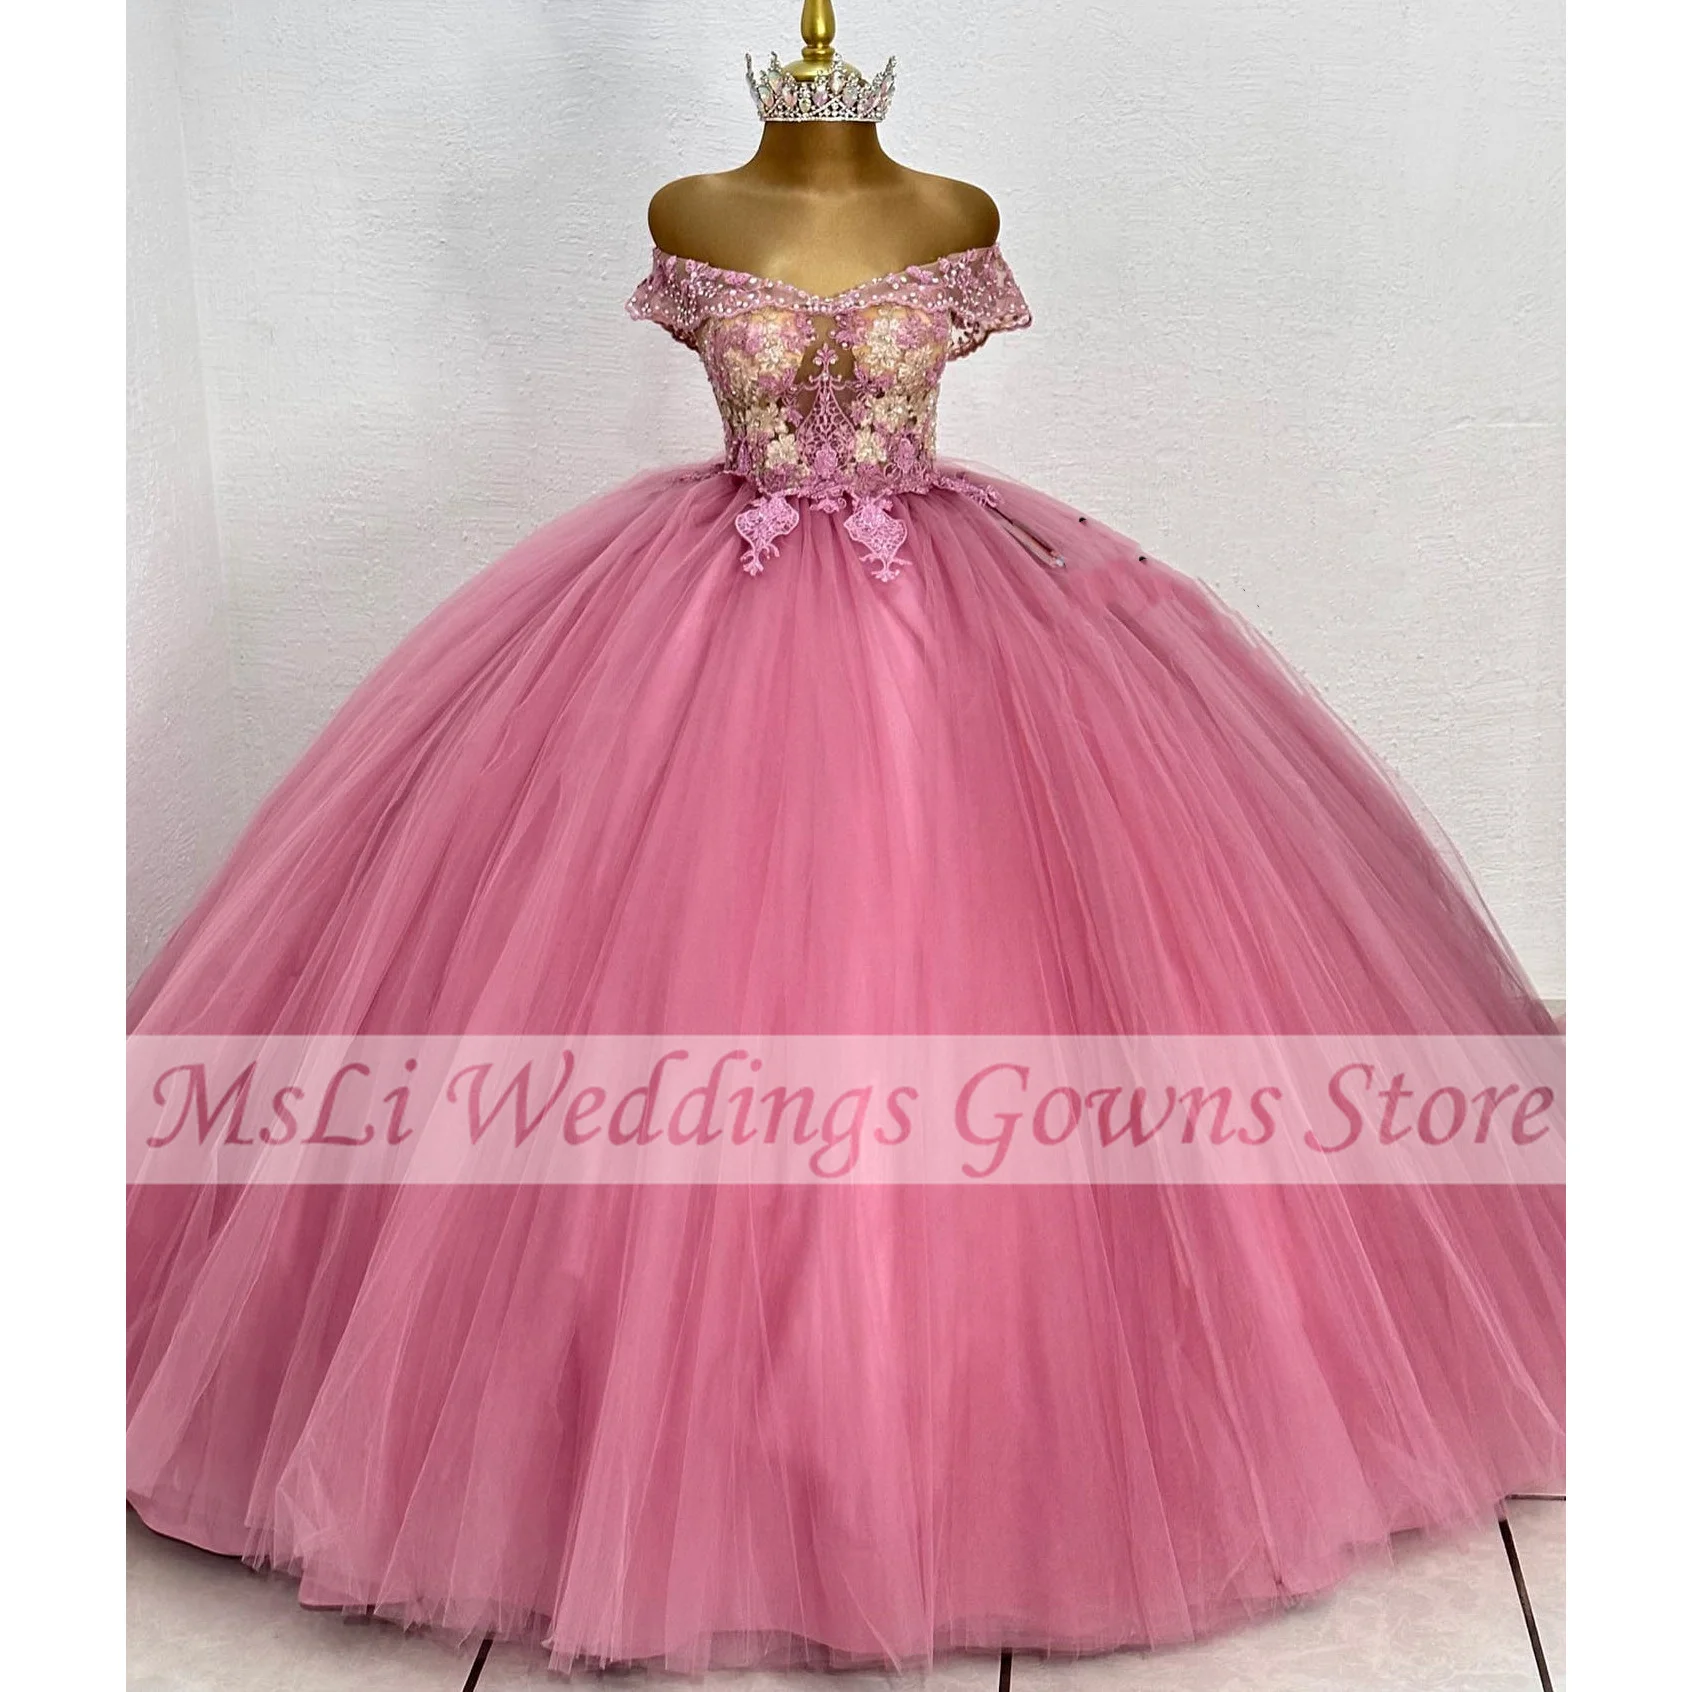 

Розовое платье Золушки для девушек 16 дюймов, бальное платье с аппликацией и открытыми плечами, бальные платья 15, платья для выпускного вечера